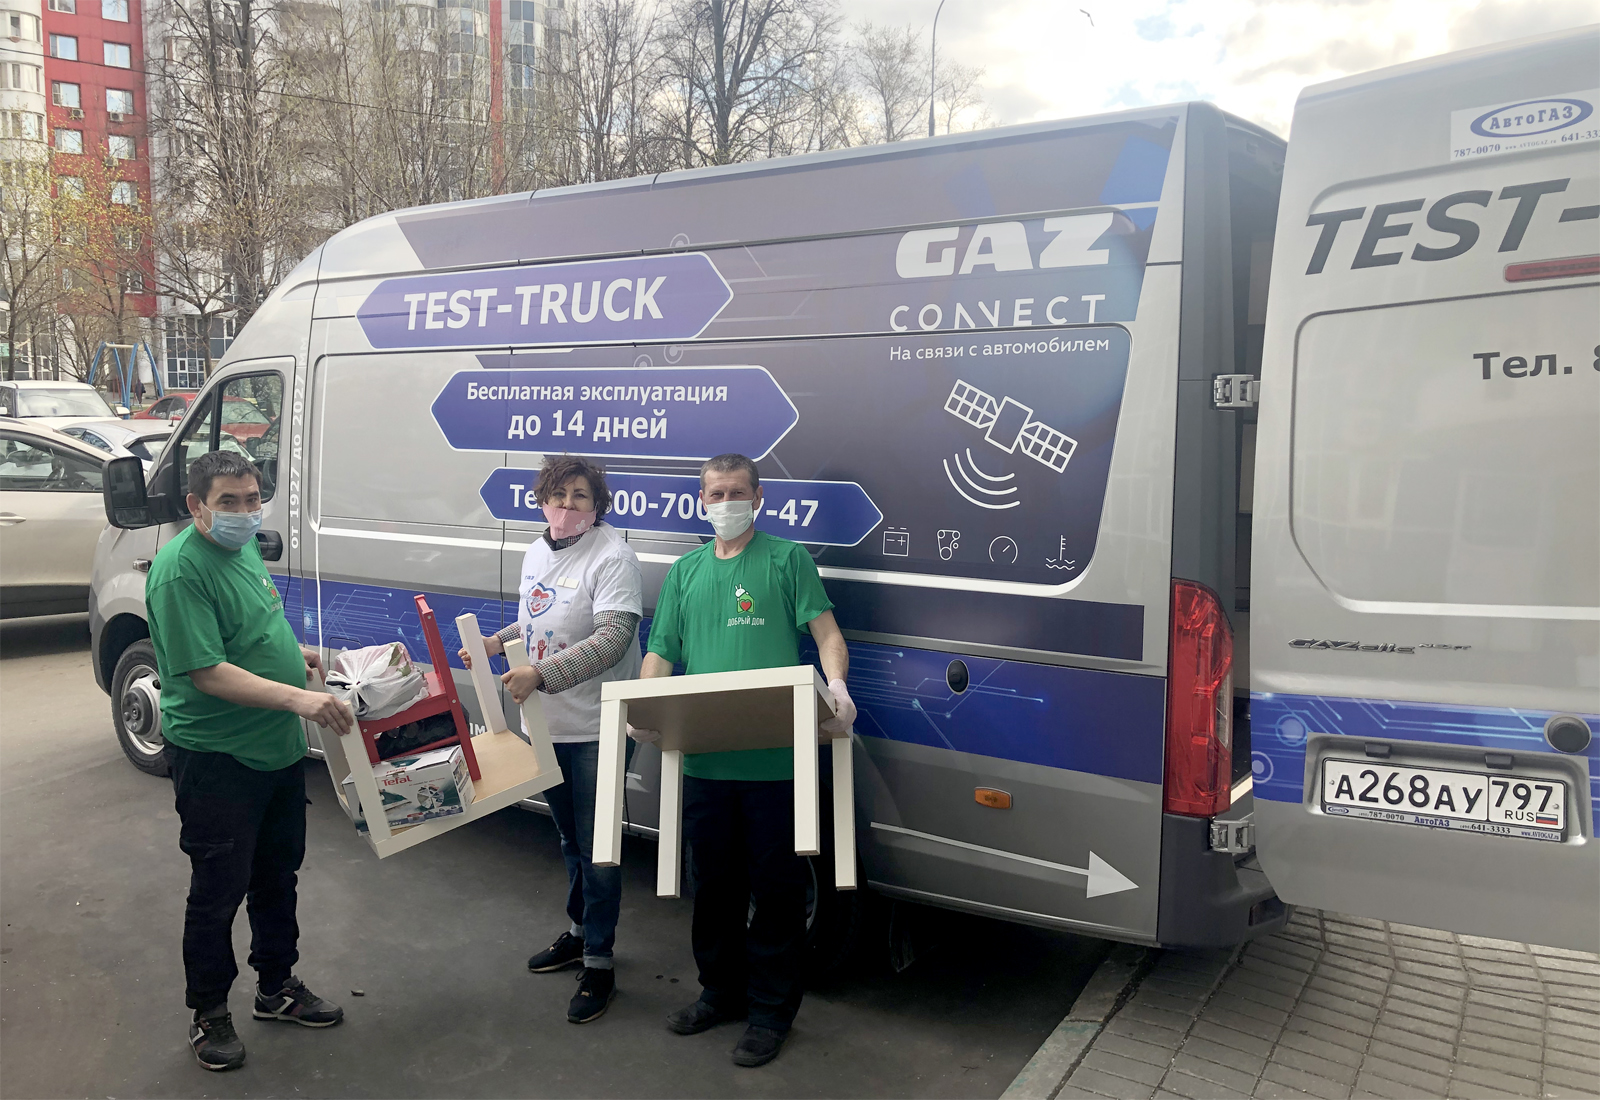 Более 200 автомобилей ГАЗ будет передано волонтерским организациям для помощи жителям во время самоизоляции